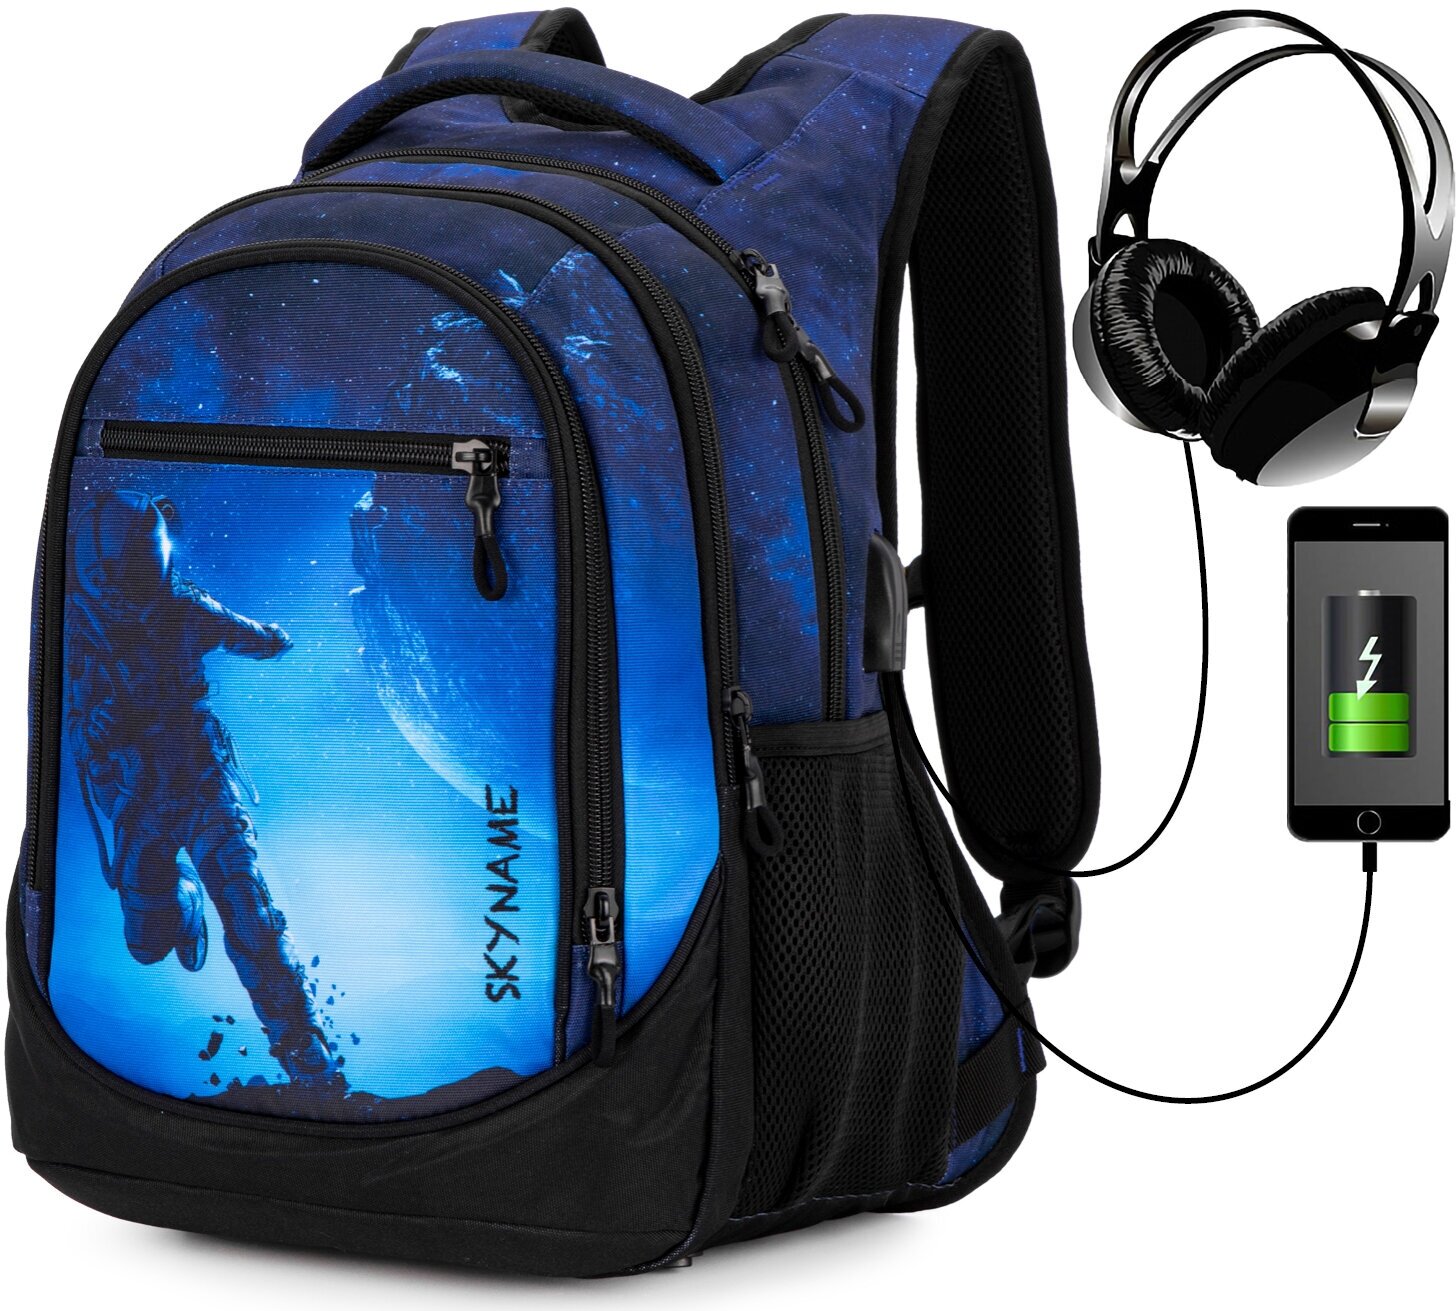 Рюкзак школьный для подростка, черный городской для мальчика/девочки, с анатомической спинкой и USB-слотом, 22.4 л, SkyName (СкайНейм)